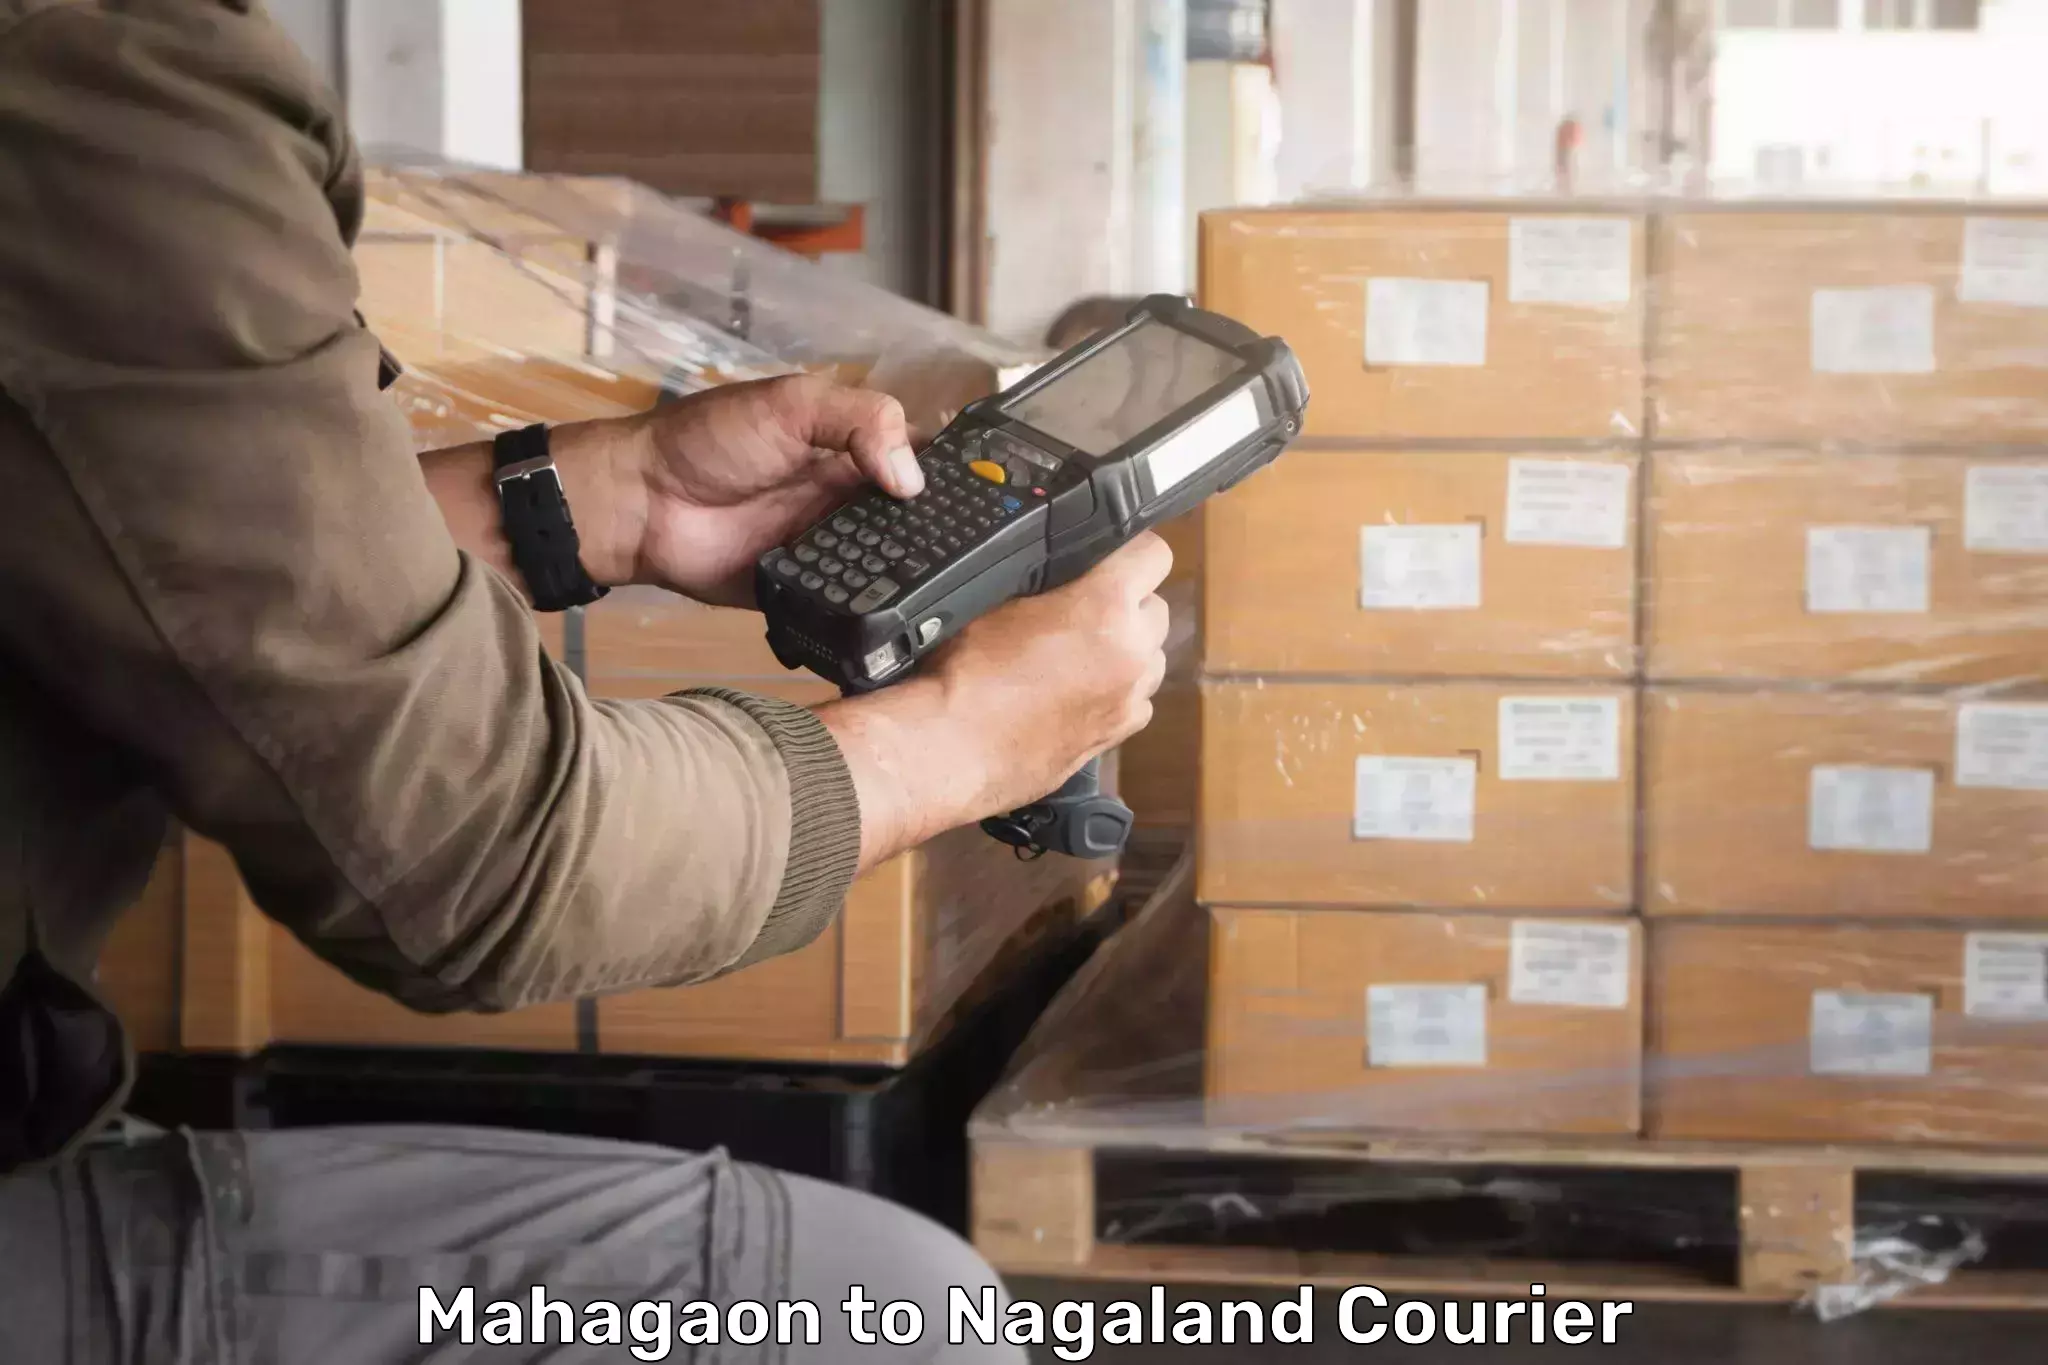 Express logistics service Mahagaon to NIT Nagaland